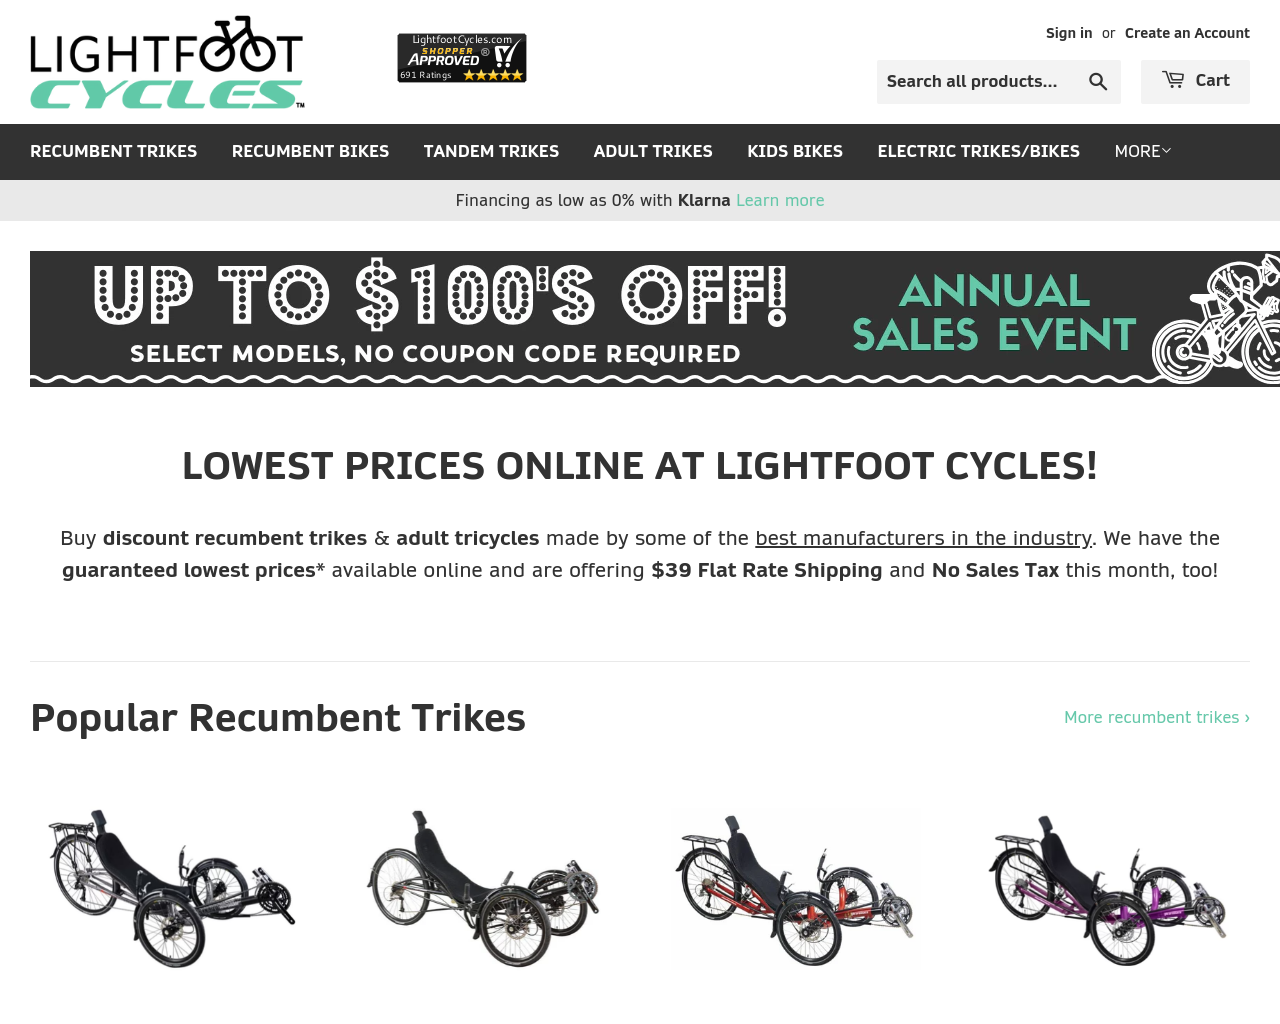 lightfootcycles.com